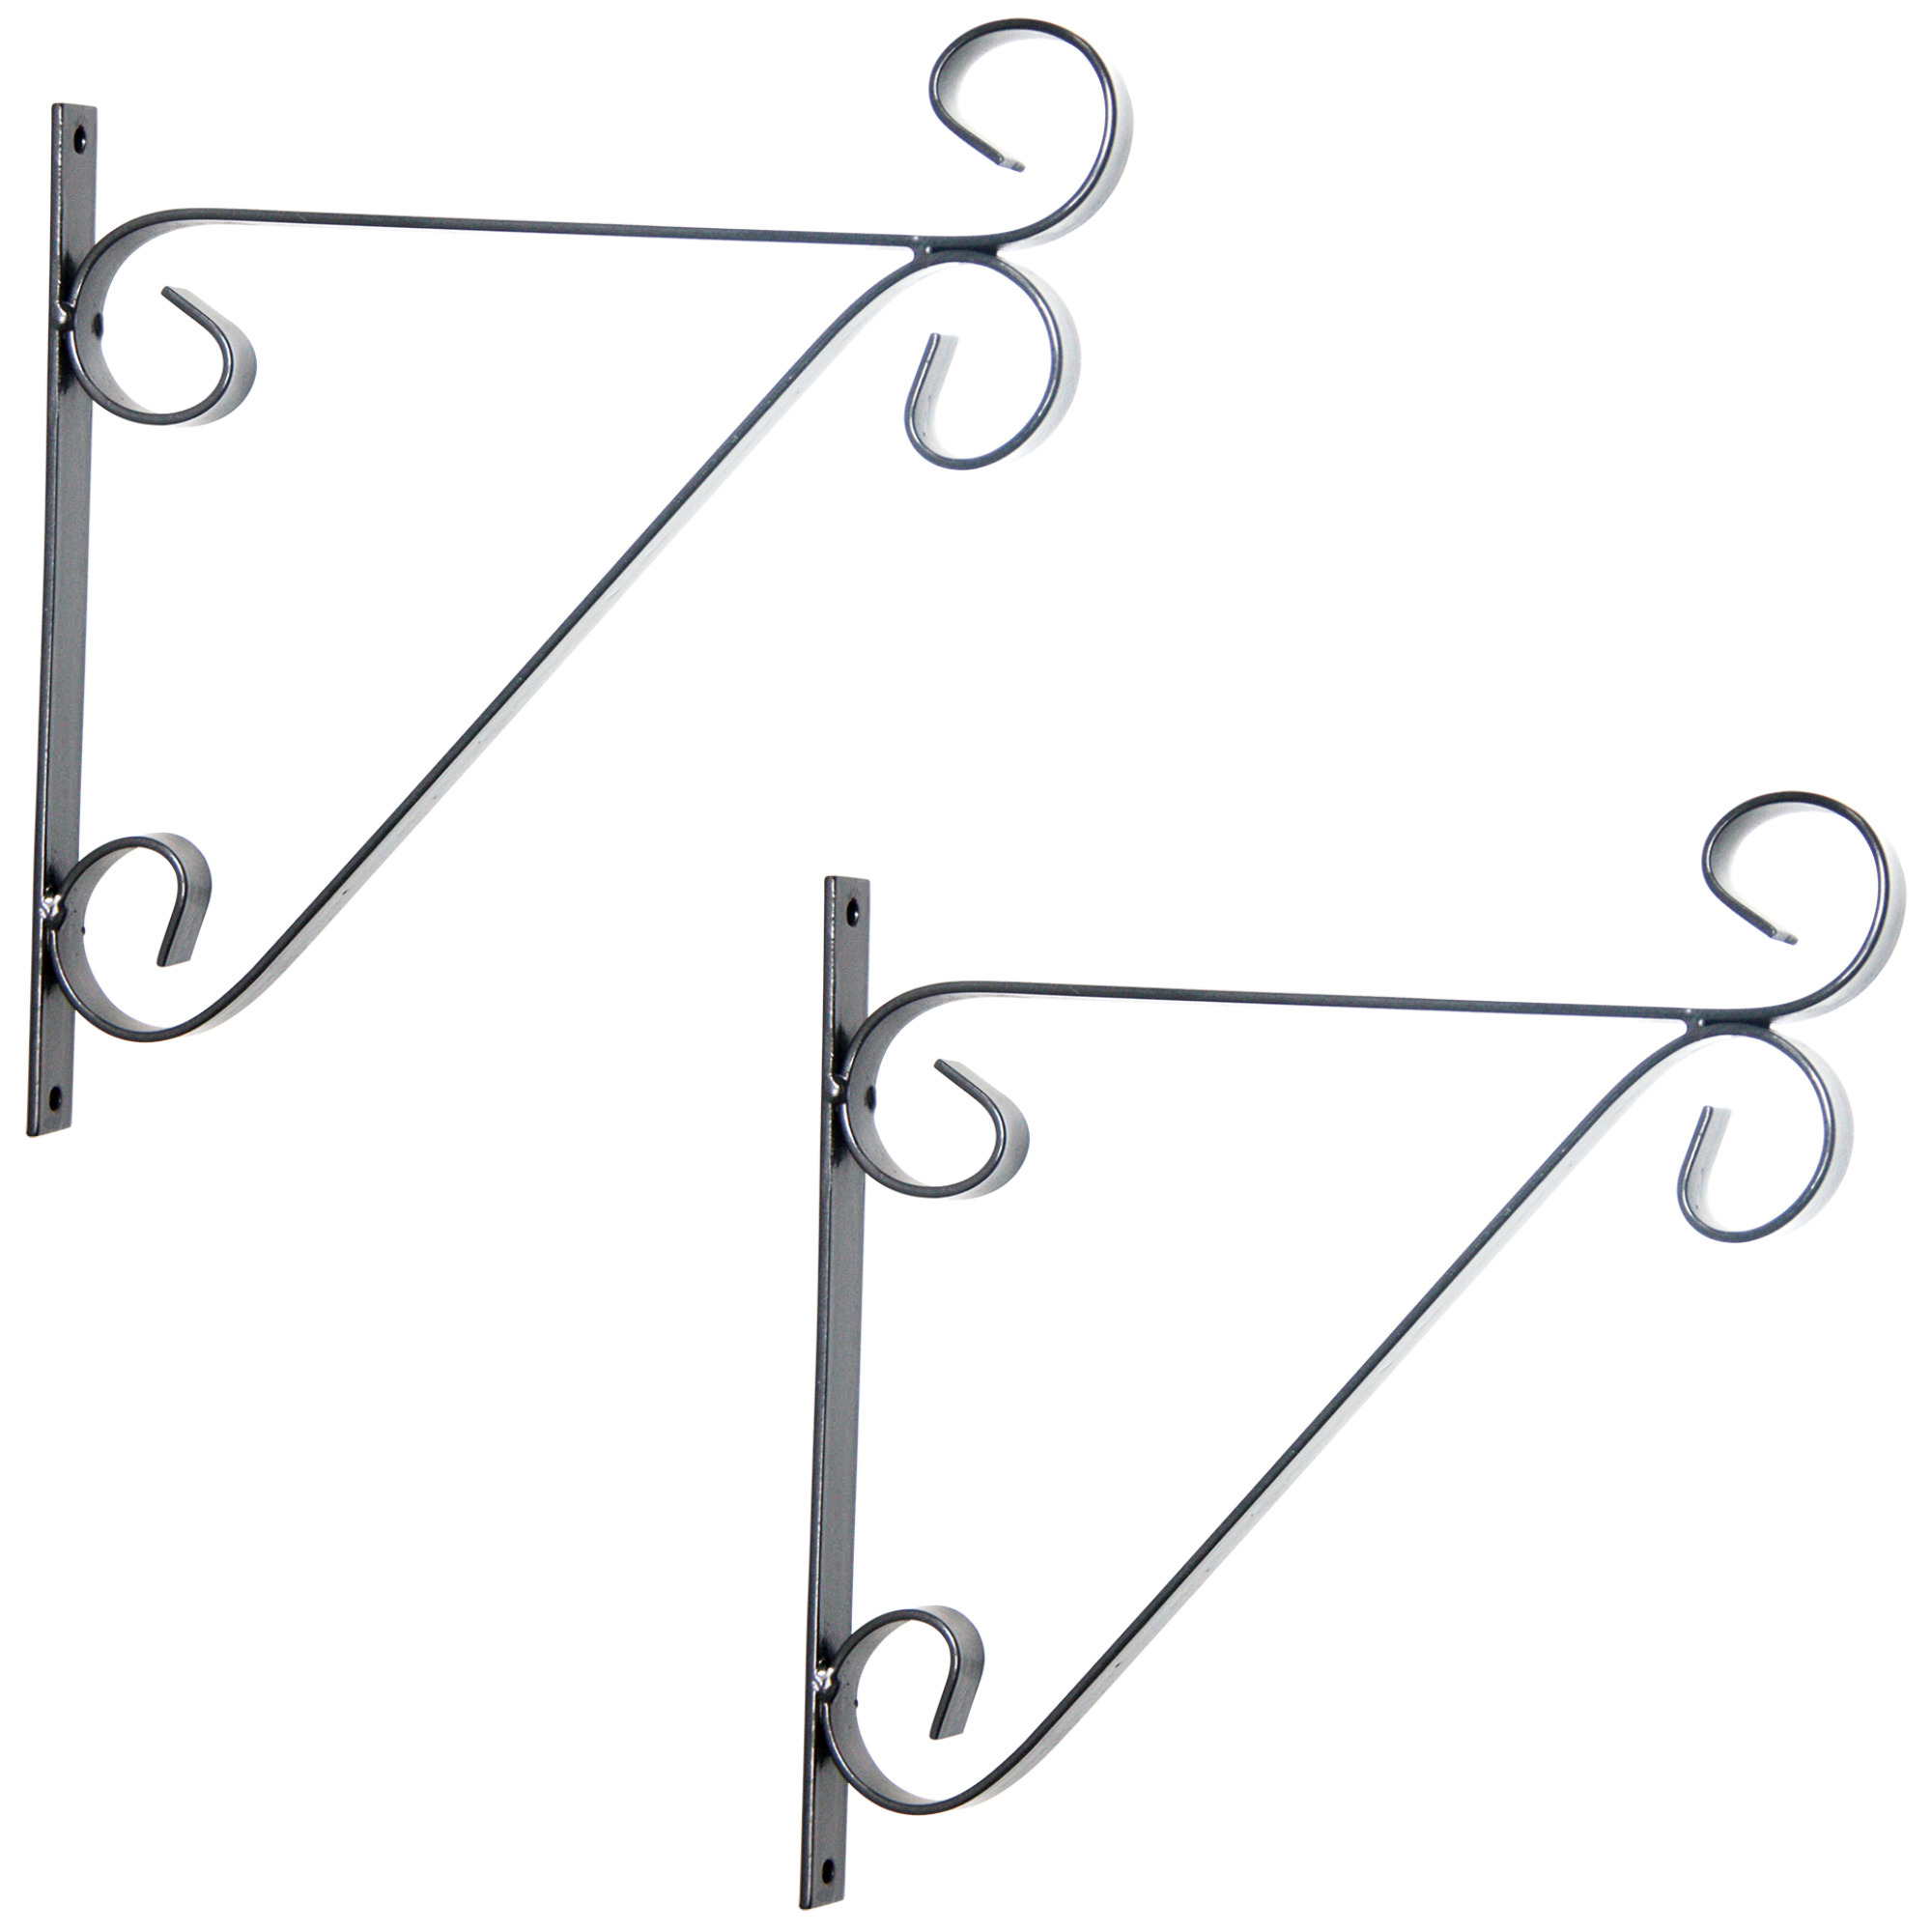 2x Zilveren hangpot haken metaal met krul - 28 x 28 cm - Muurpothangers voor plantenbakken/bloembakken - Tuin/muur decoraties - Silver